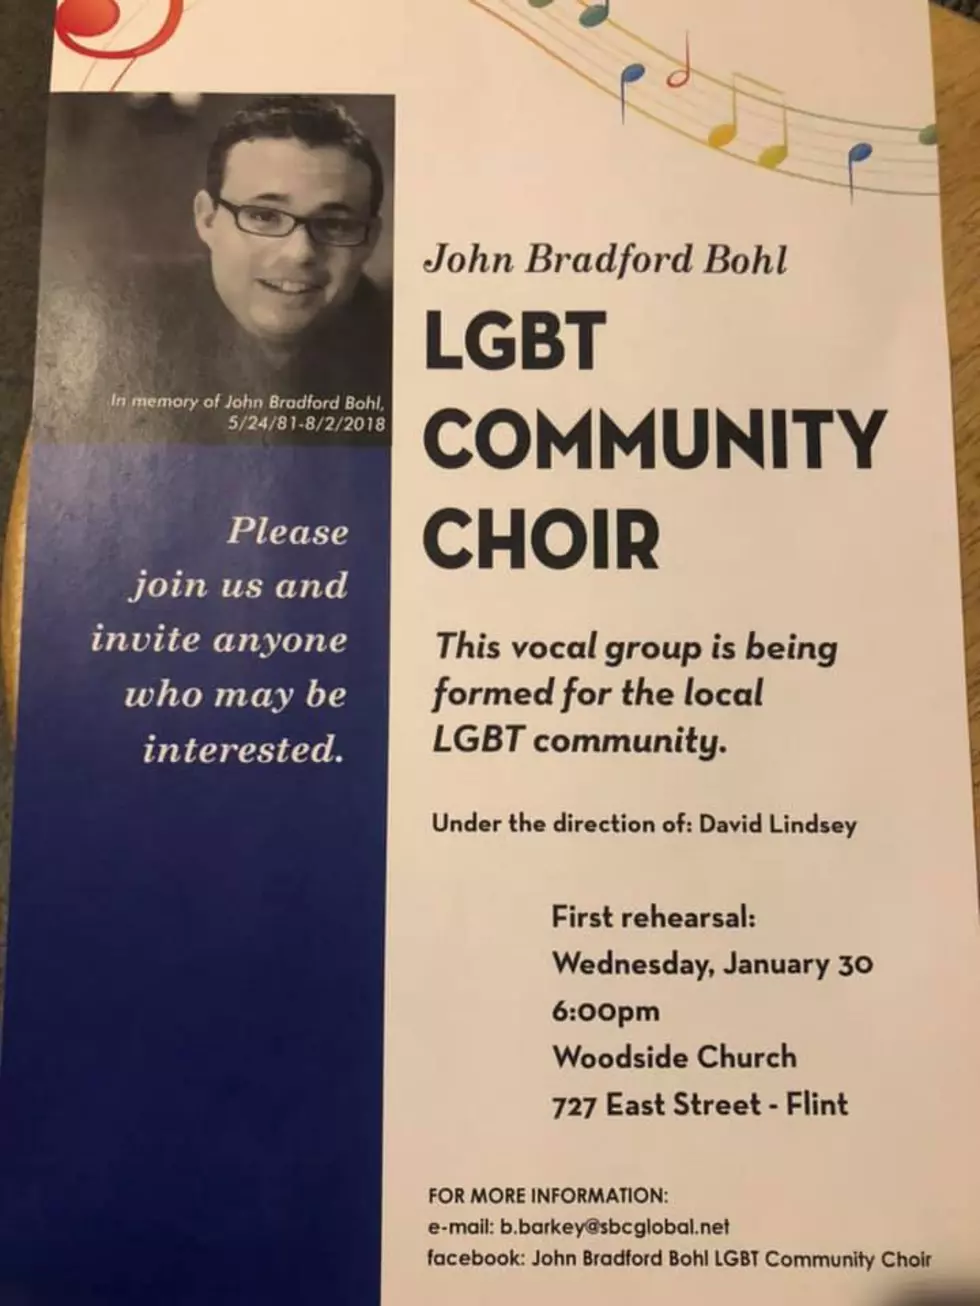 LOCAL SPOTLIGHT: John Bradford Bohl LGBT Community Choir in Flint